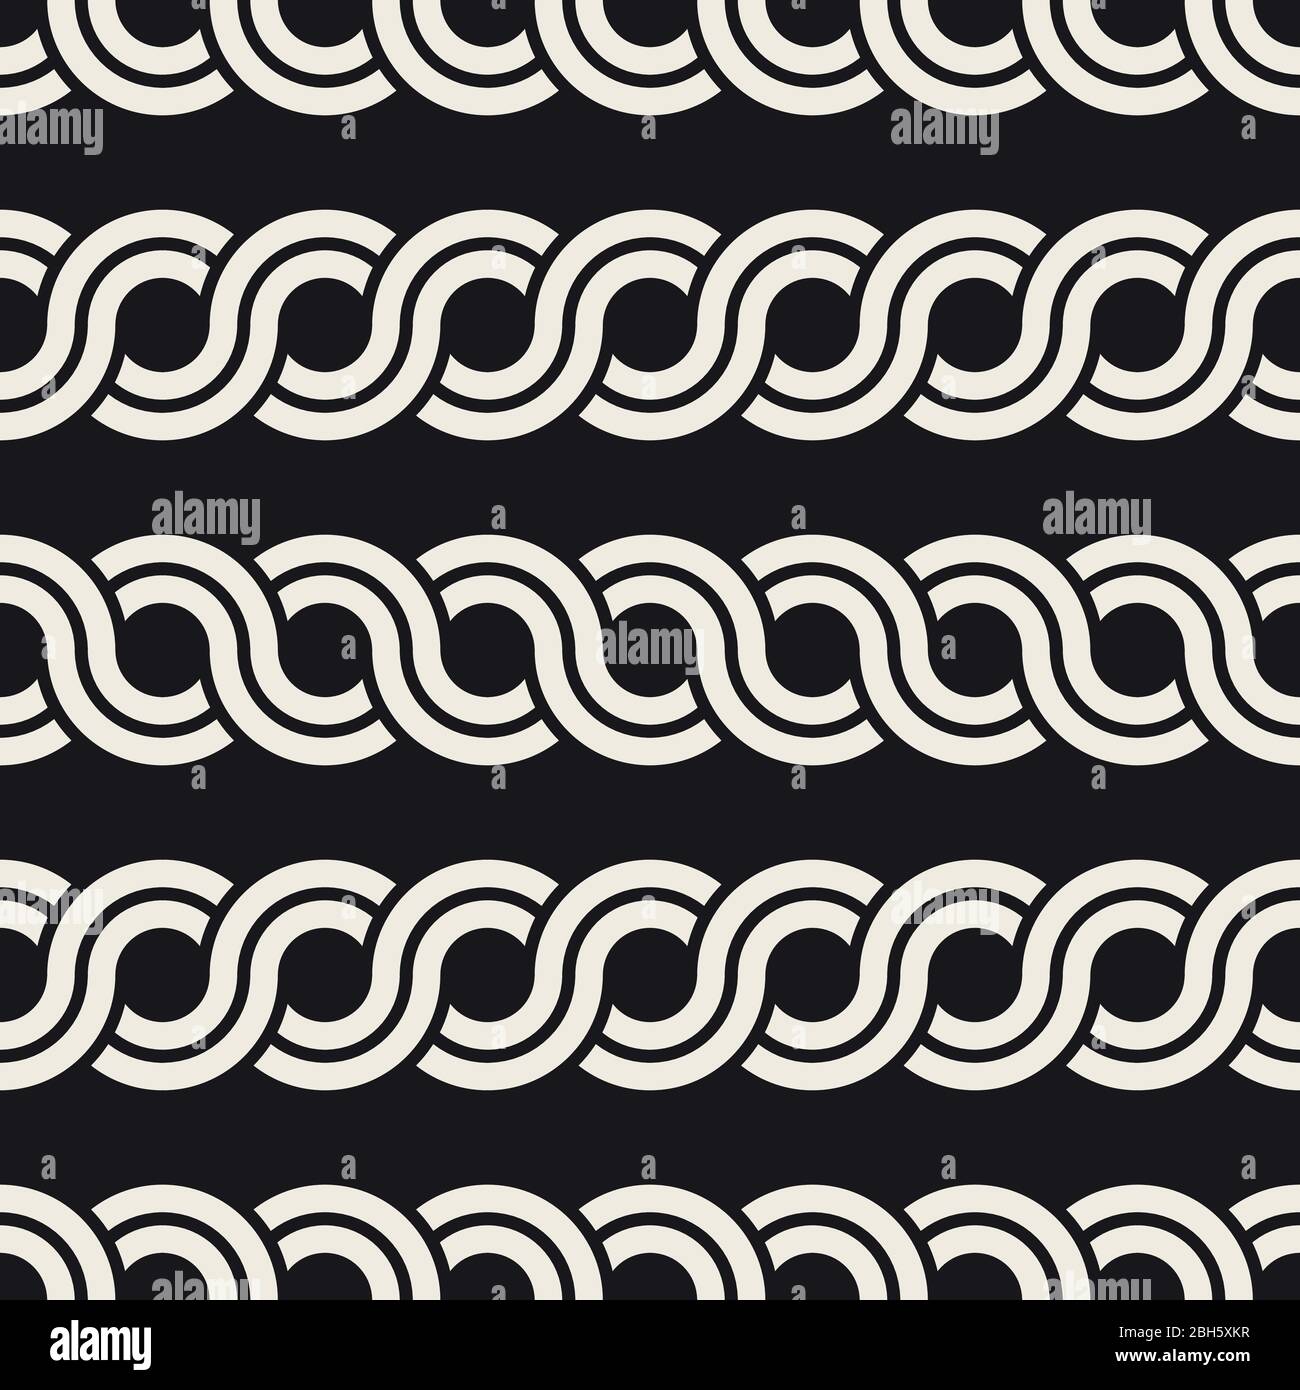 Vektor nahtlose Muster. Monochrome wellenförmige Streifen Hintergrund. Die dekorativen geometrischen interlaced Linien. Stock Vektor